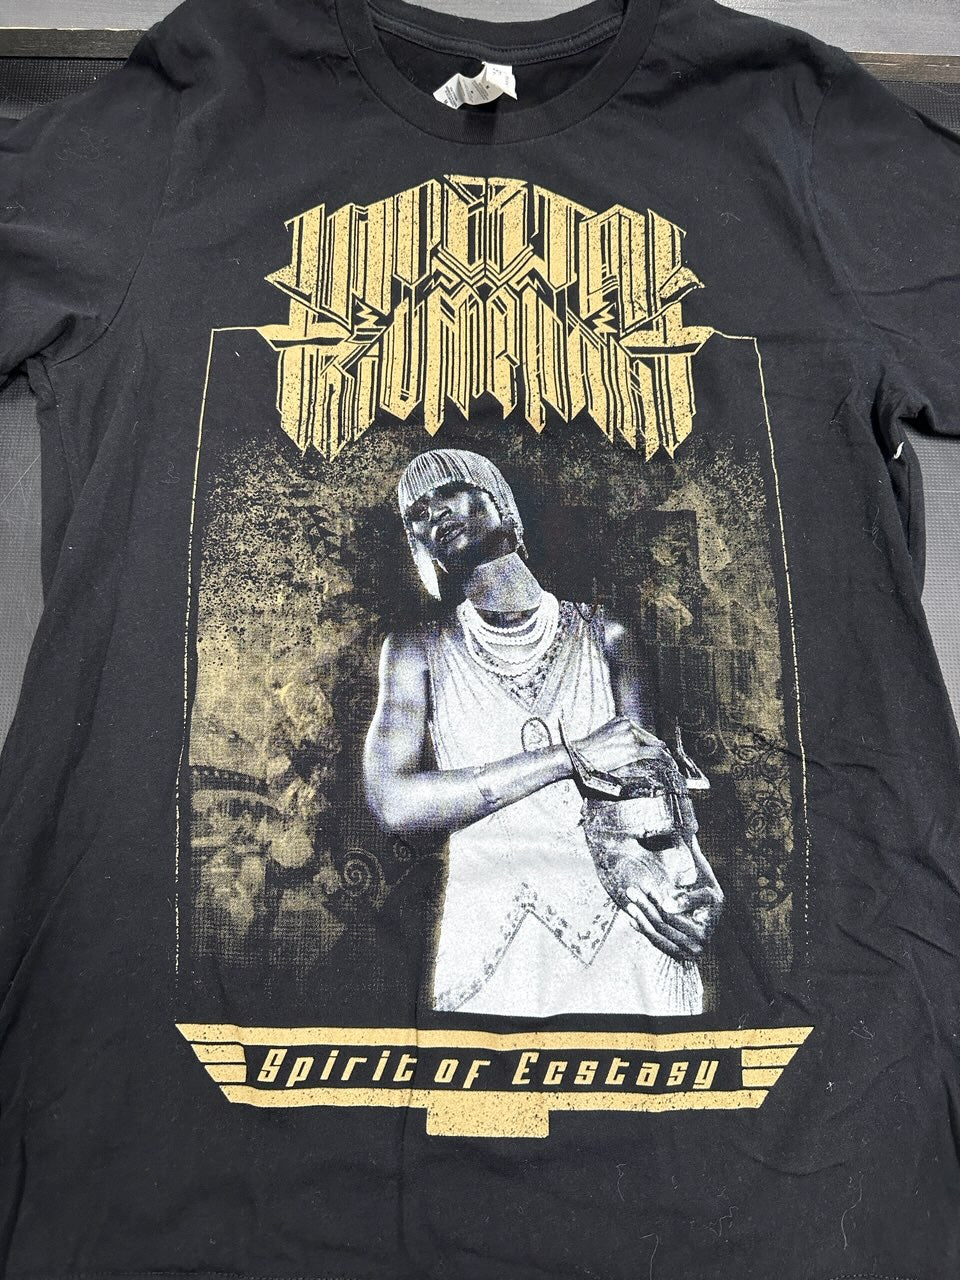 Imperial Triumphant Spirit Of Ecstasy Album Cover T-Shirt, Blk, M